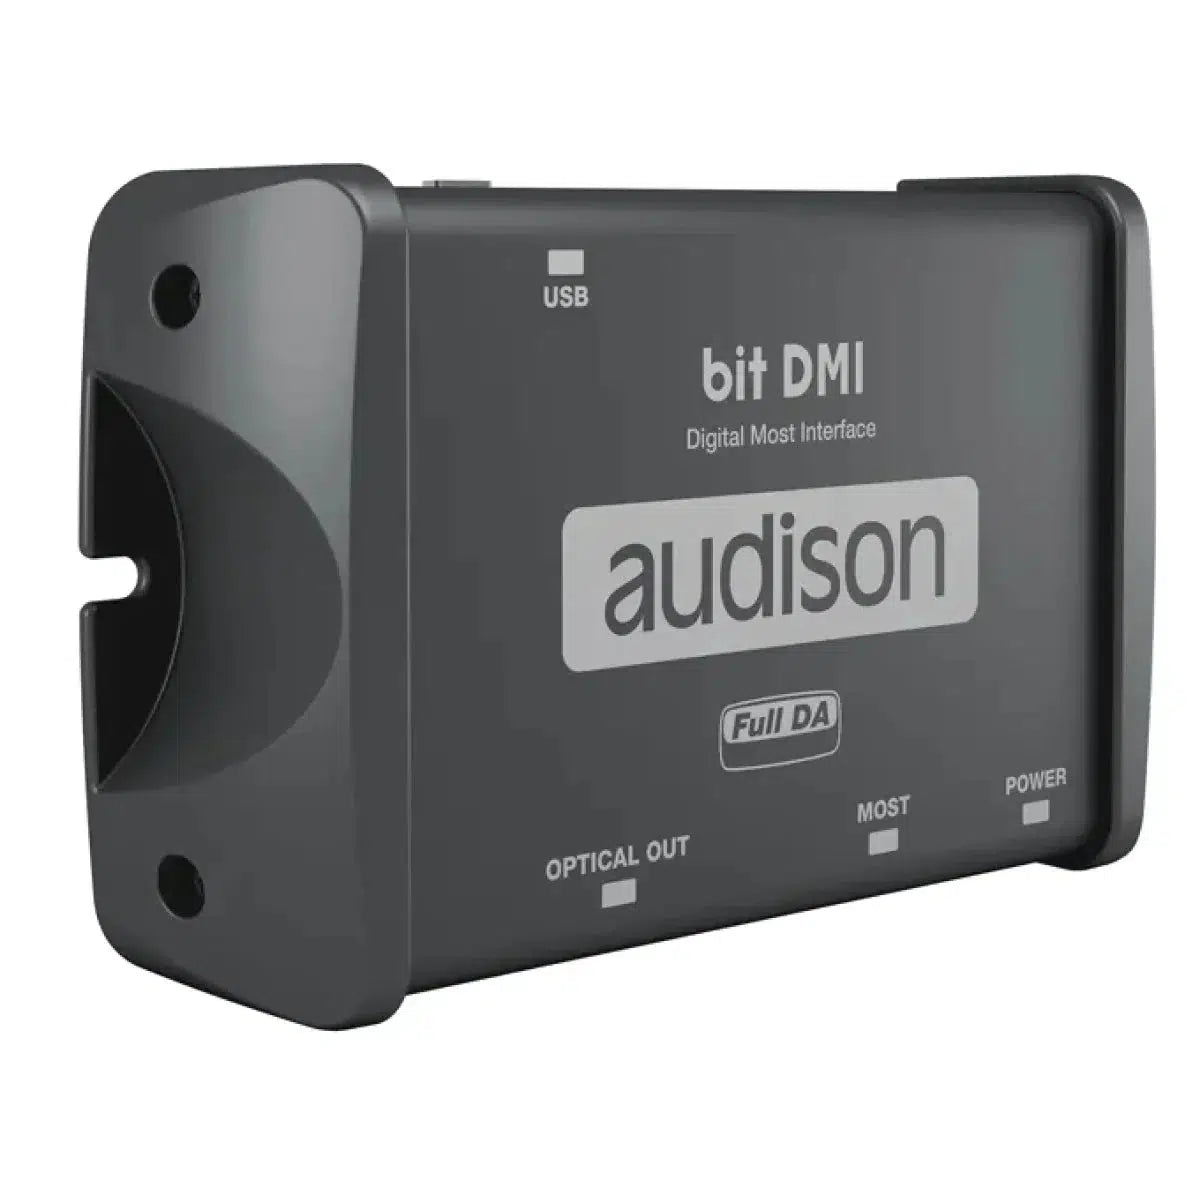 Audison-bit DMI-Accessoires d'amplification-Masori.fr